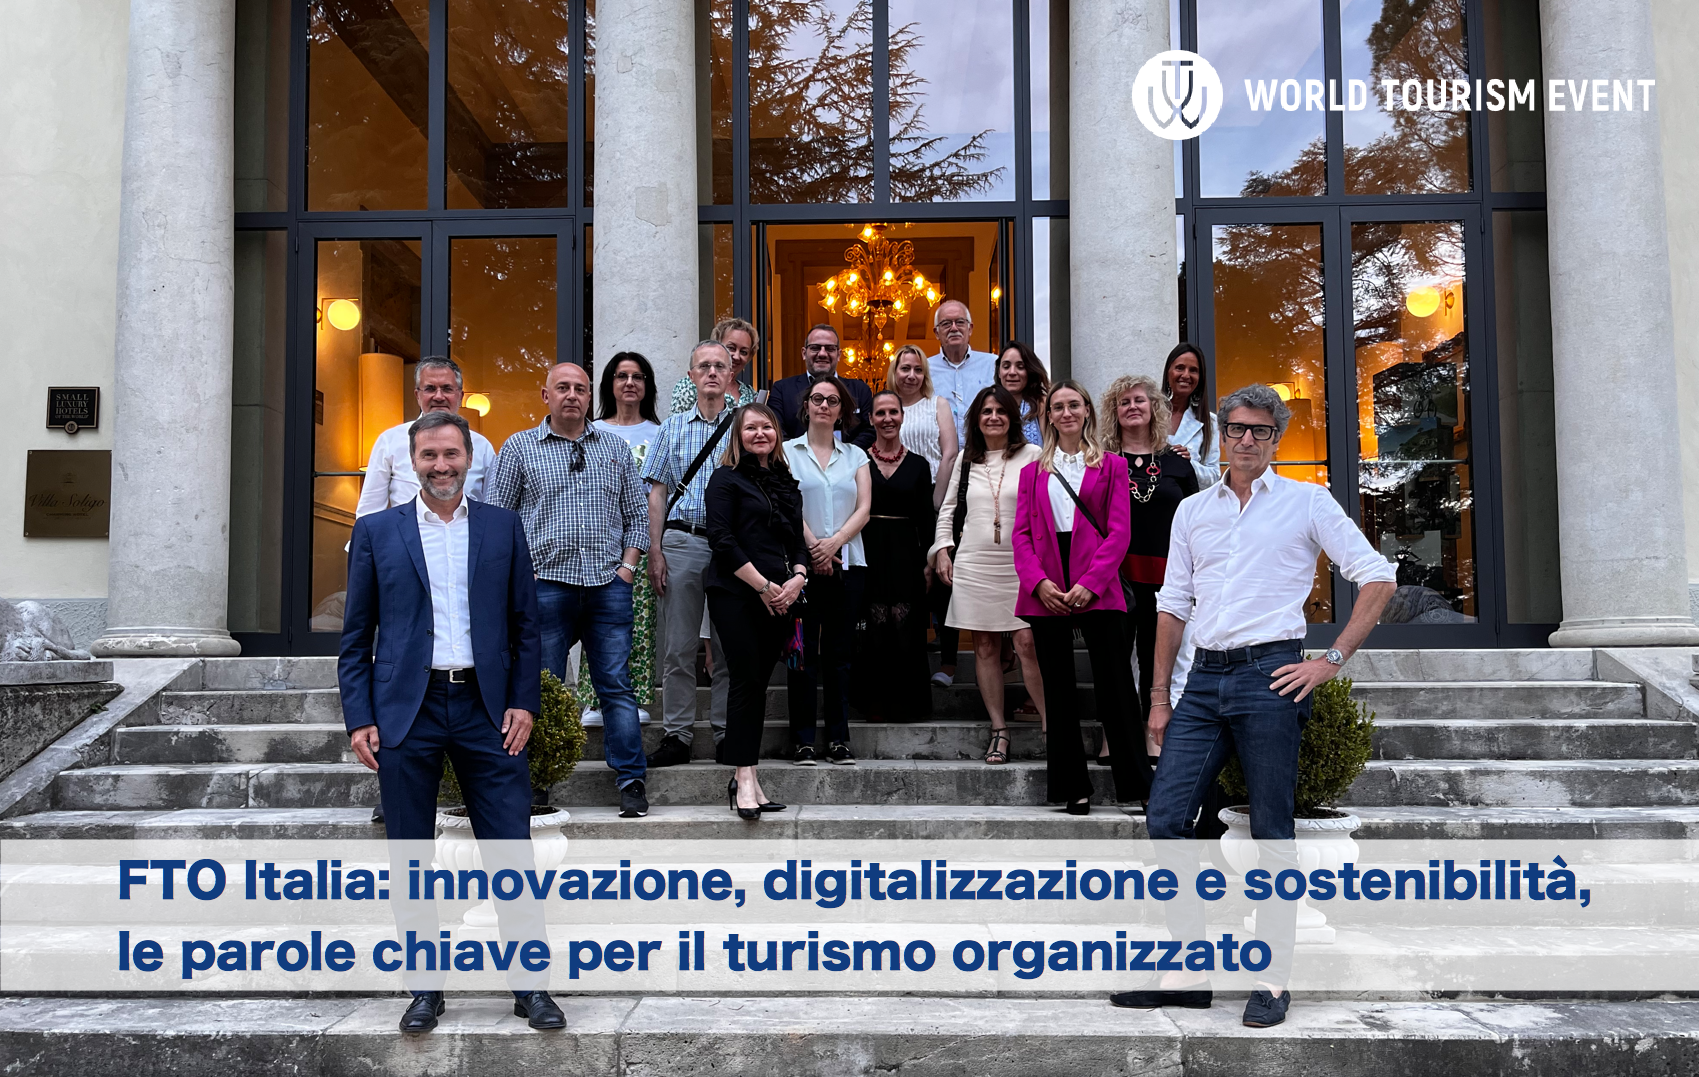 FTO Italia: innovazione, digitalizzazione e sostenibilità, le parole chiave per il turismo organizzato